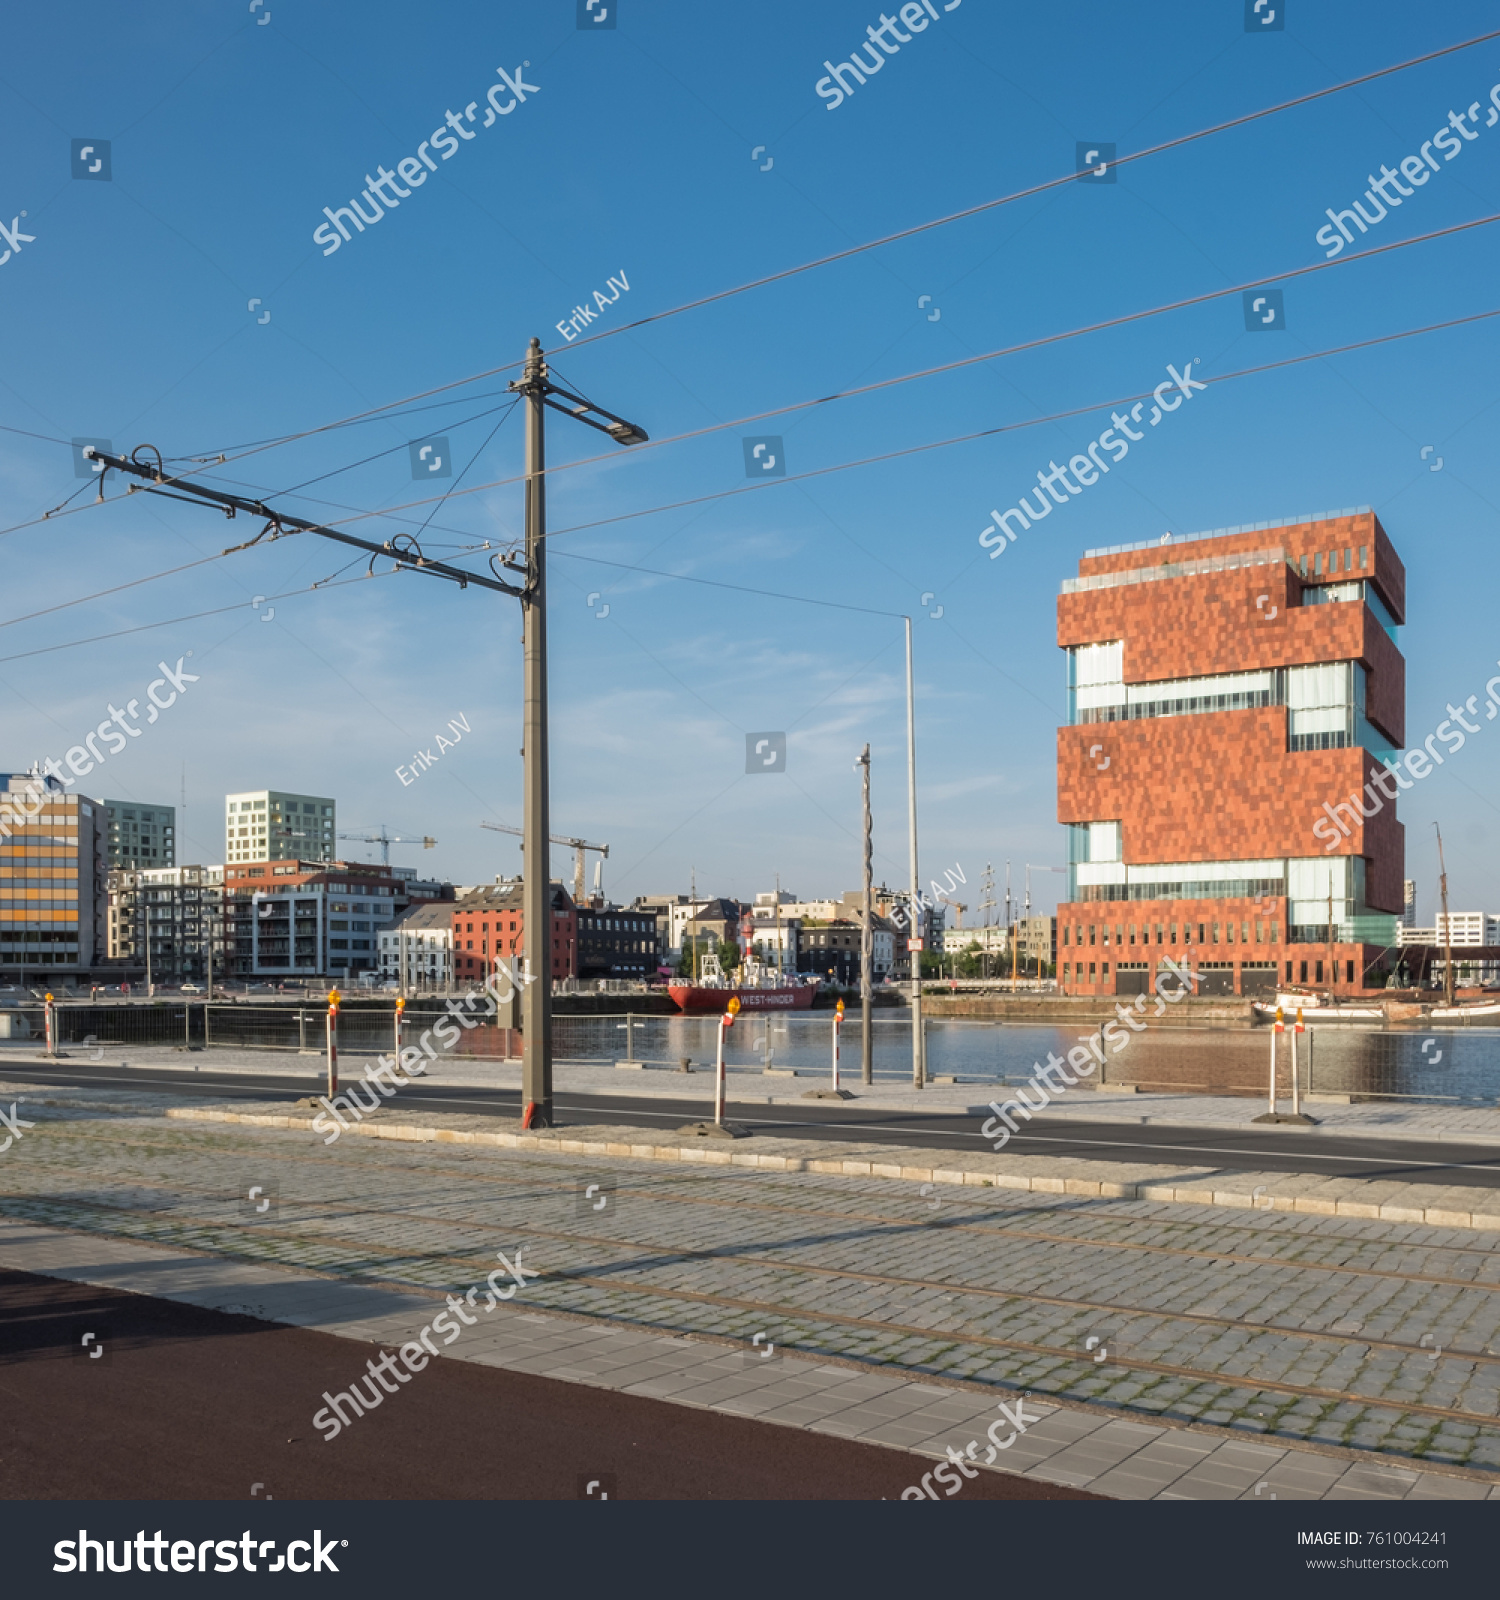 View on new tramline in front of MAS Museum, Wednesday 14 June 2017, Antwerp, Belgium. #761004241